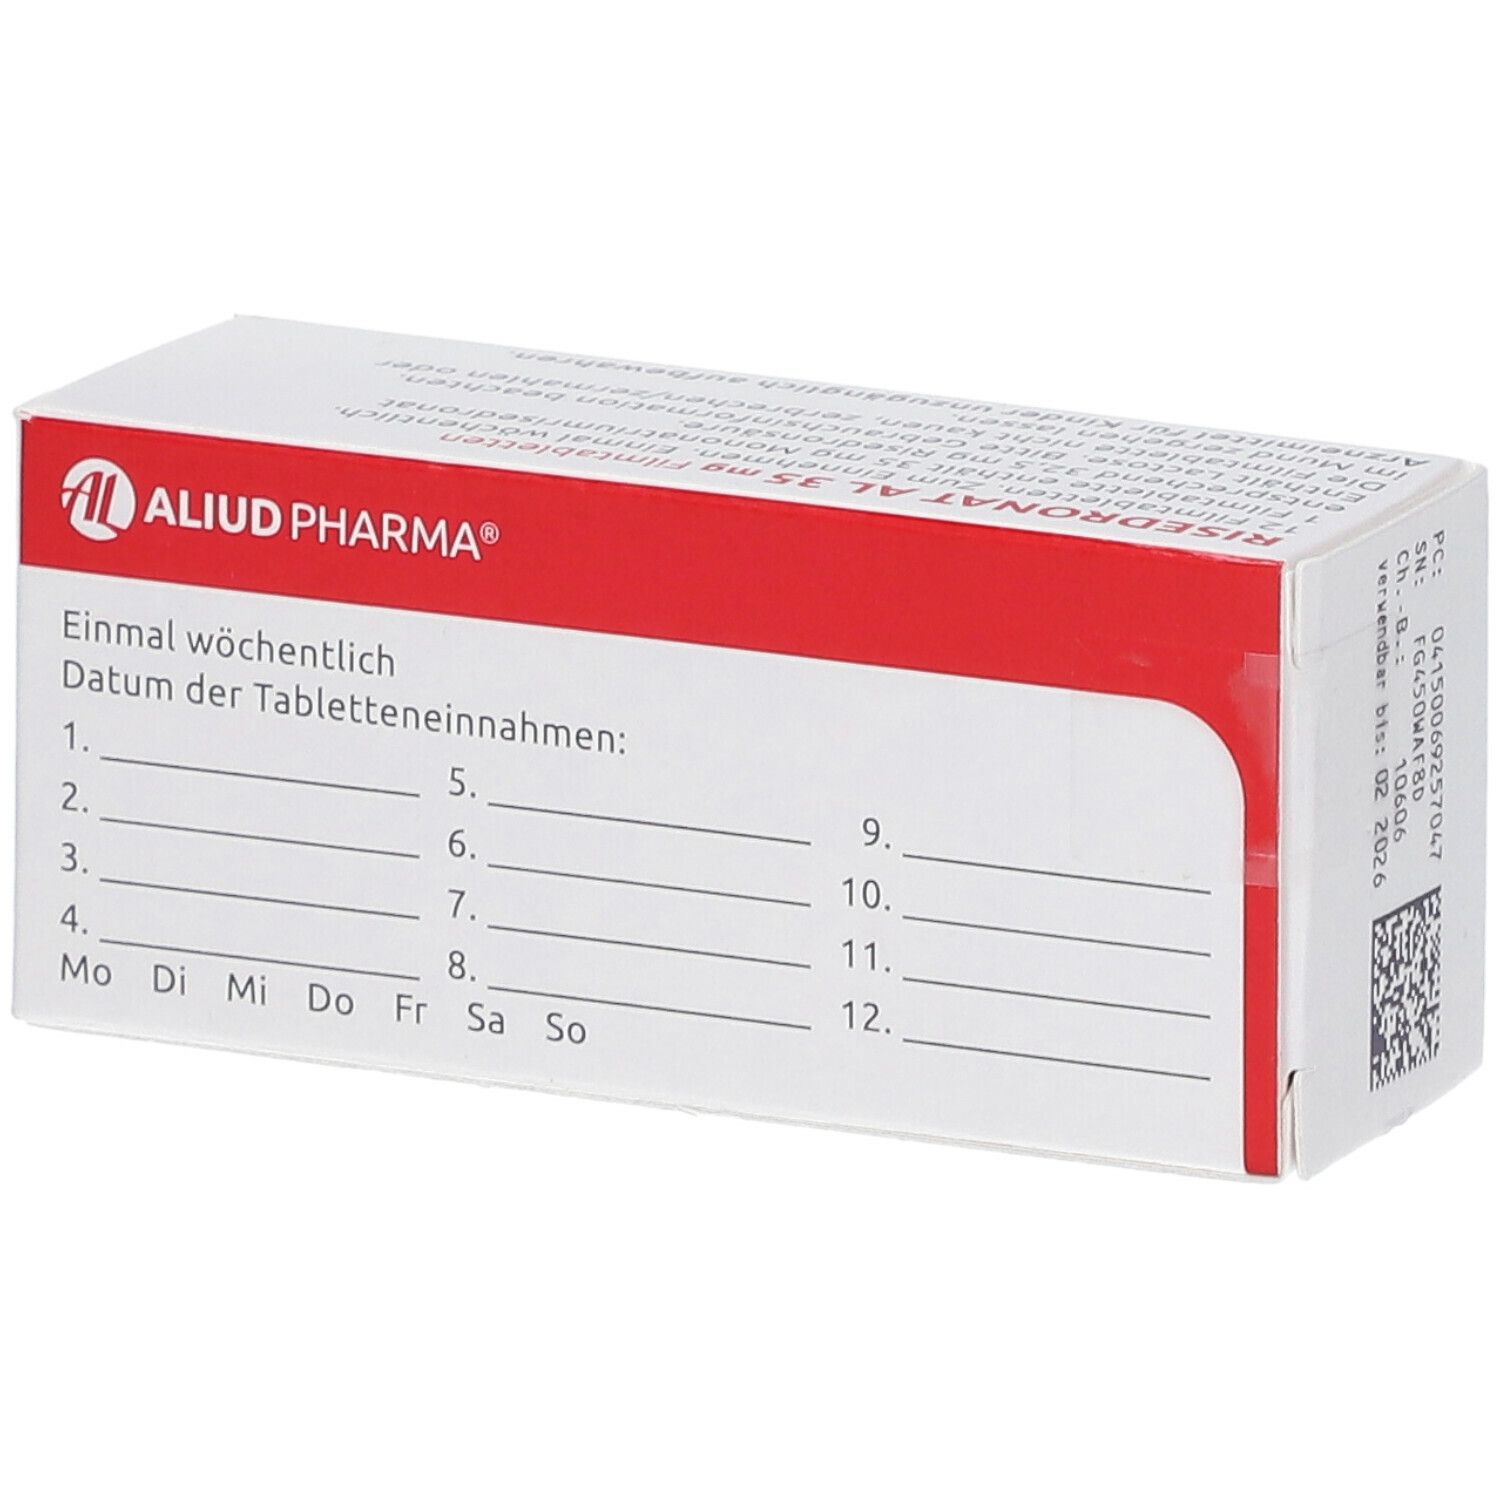 Risedronat AL 35 mg